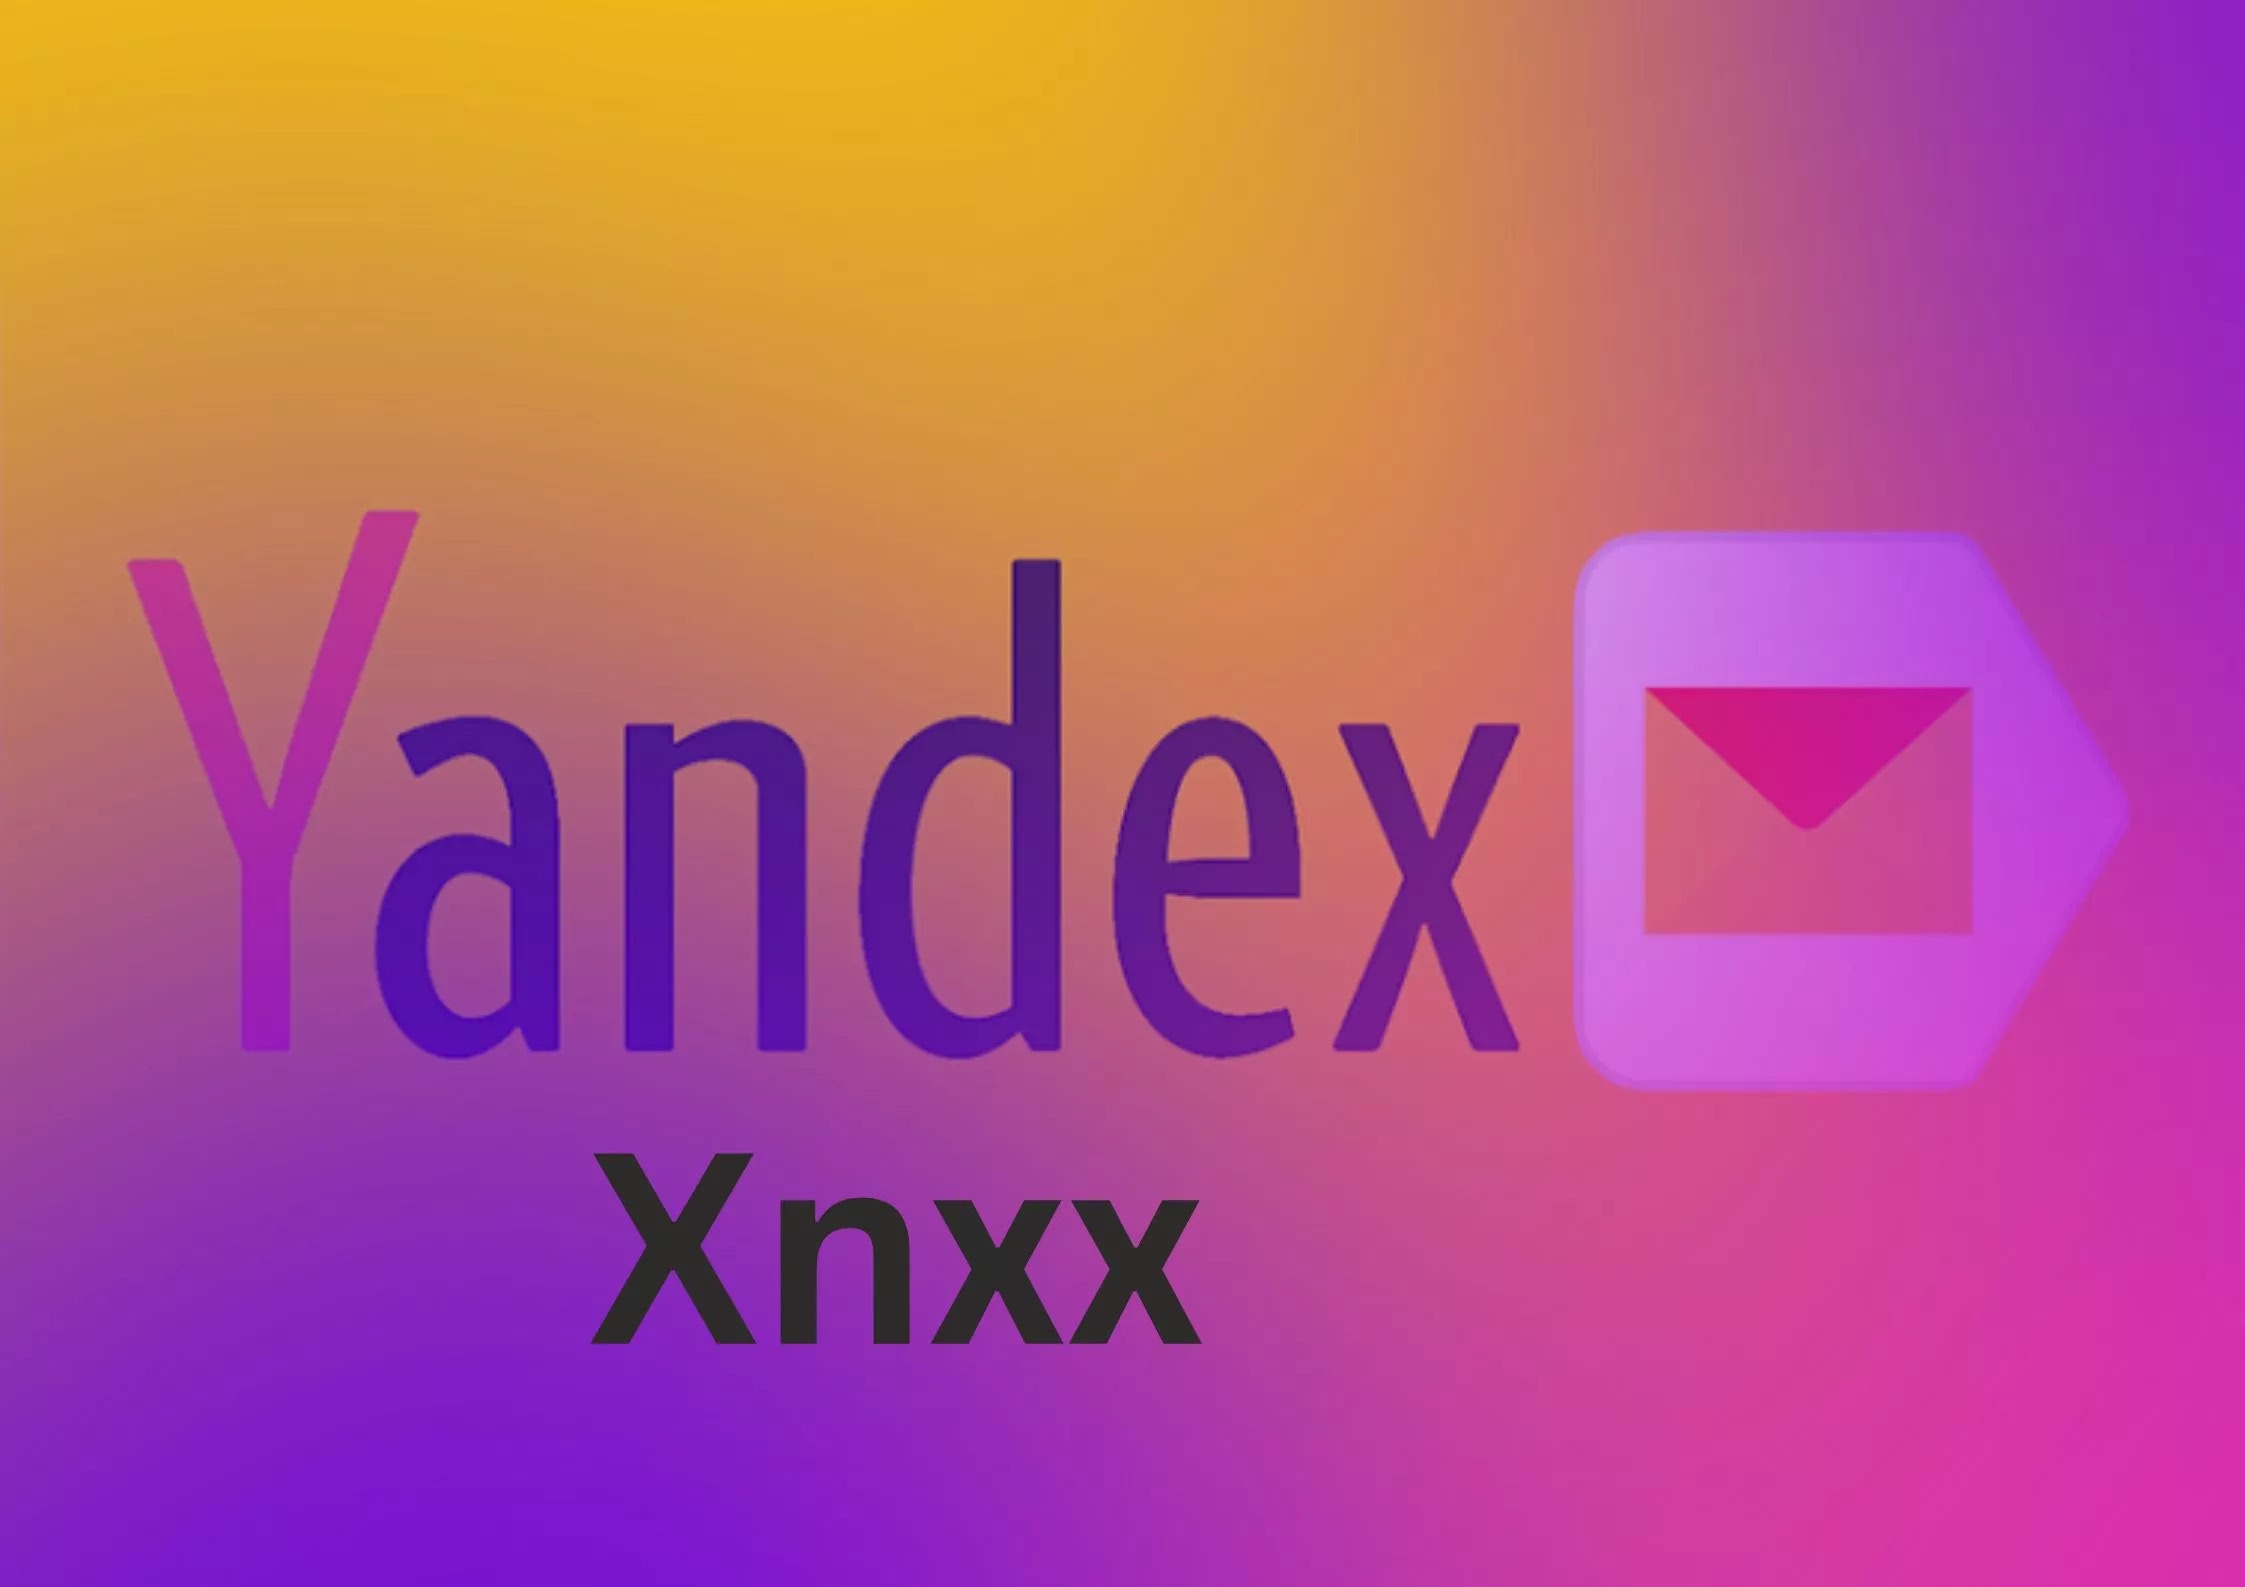 Xnxx yandex